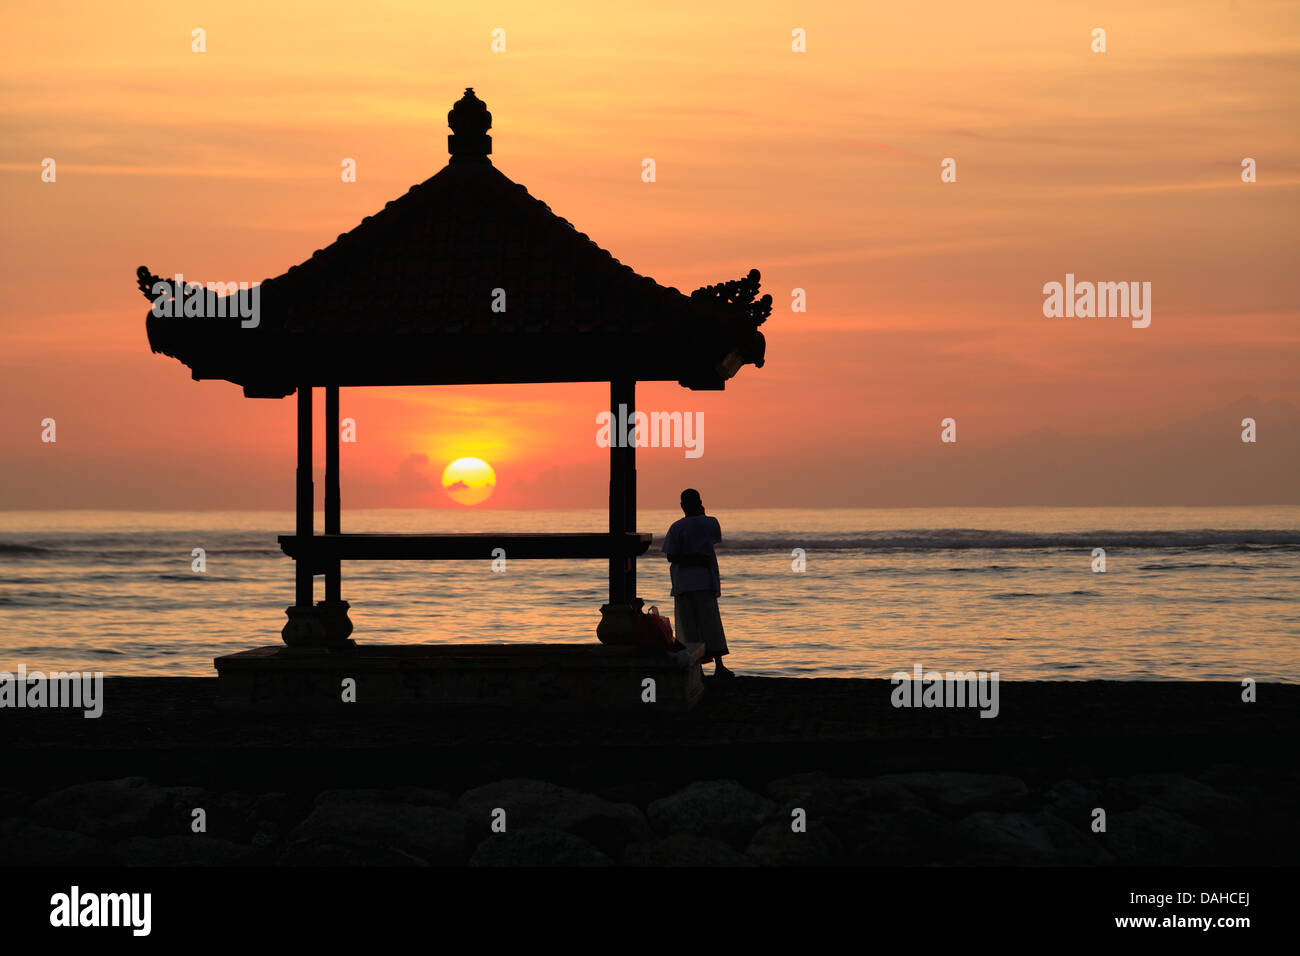 Eine Person neben einem Balinesischen Pagode stehen am Strand von Sanur, Bali. Bei Sonnenaufgang. Bali, Indonesien Stockfoto